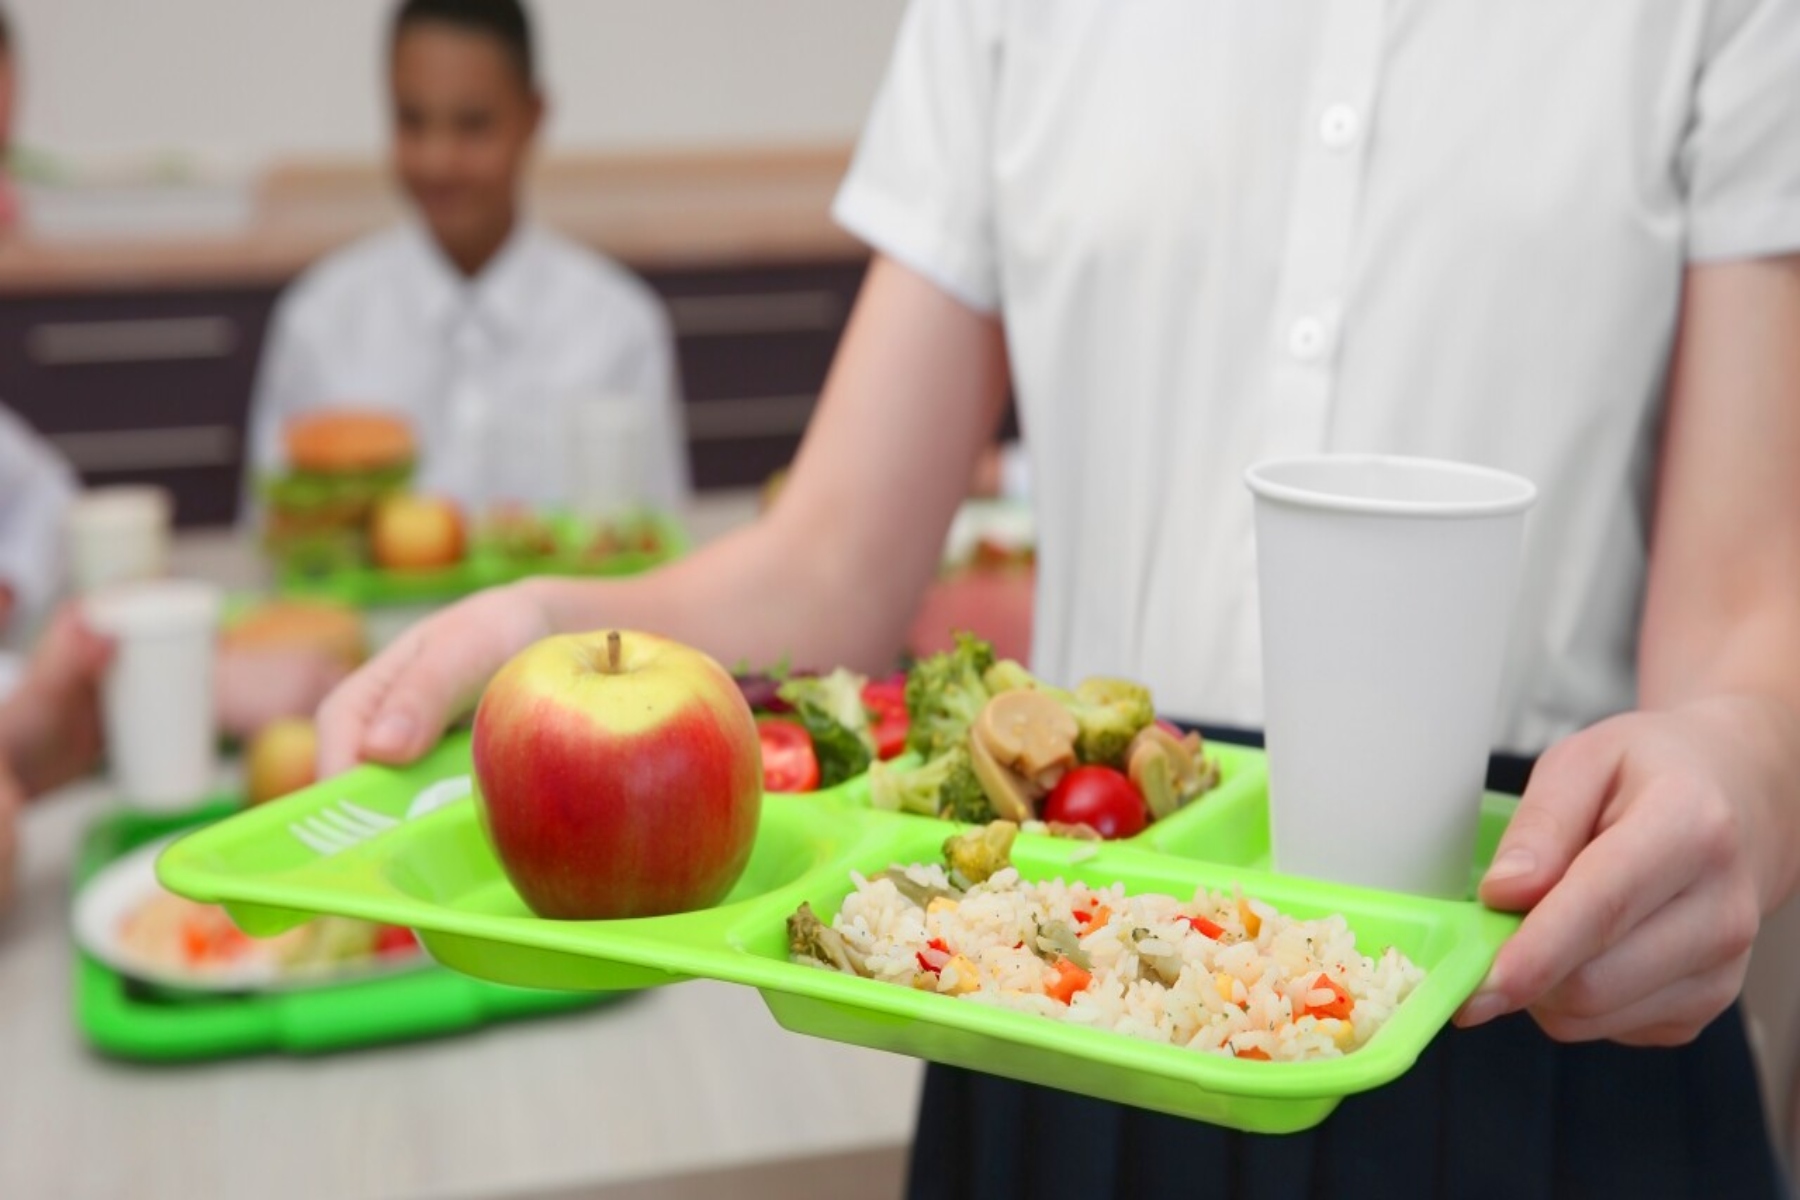 ΗΠΑ σχολικά γεύματα: Περιορισμοί στη ζάχαρη και το νάτριο για 1η φορά